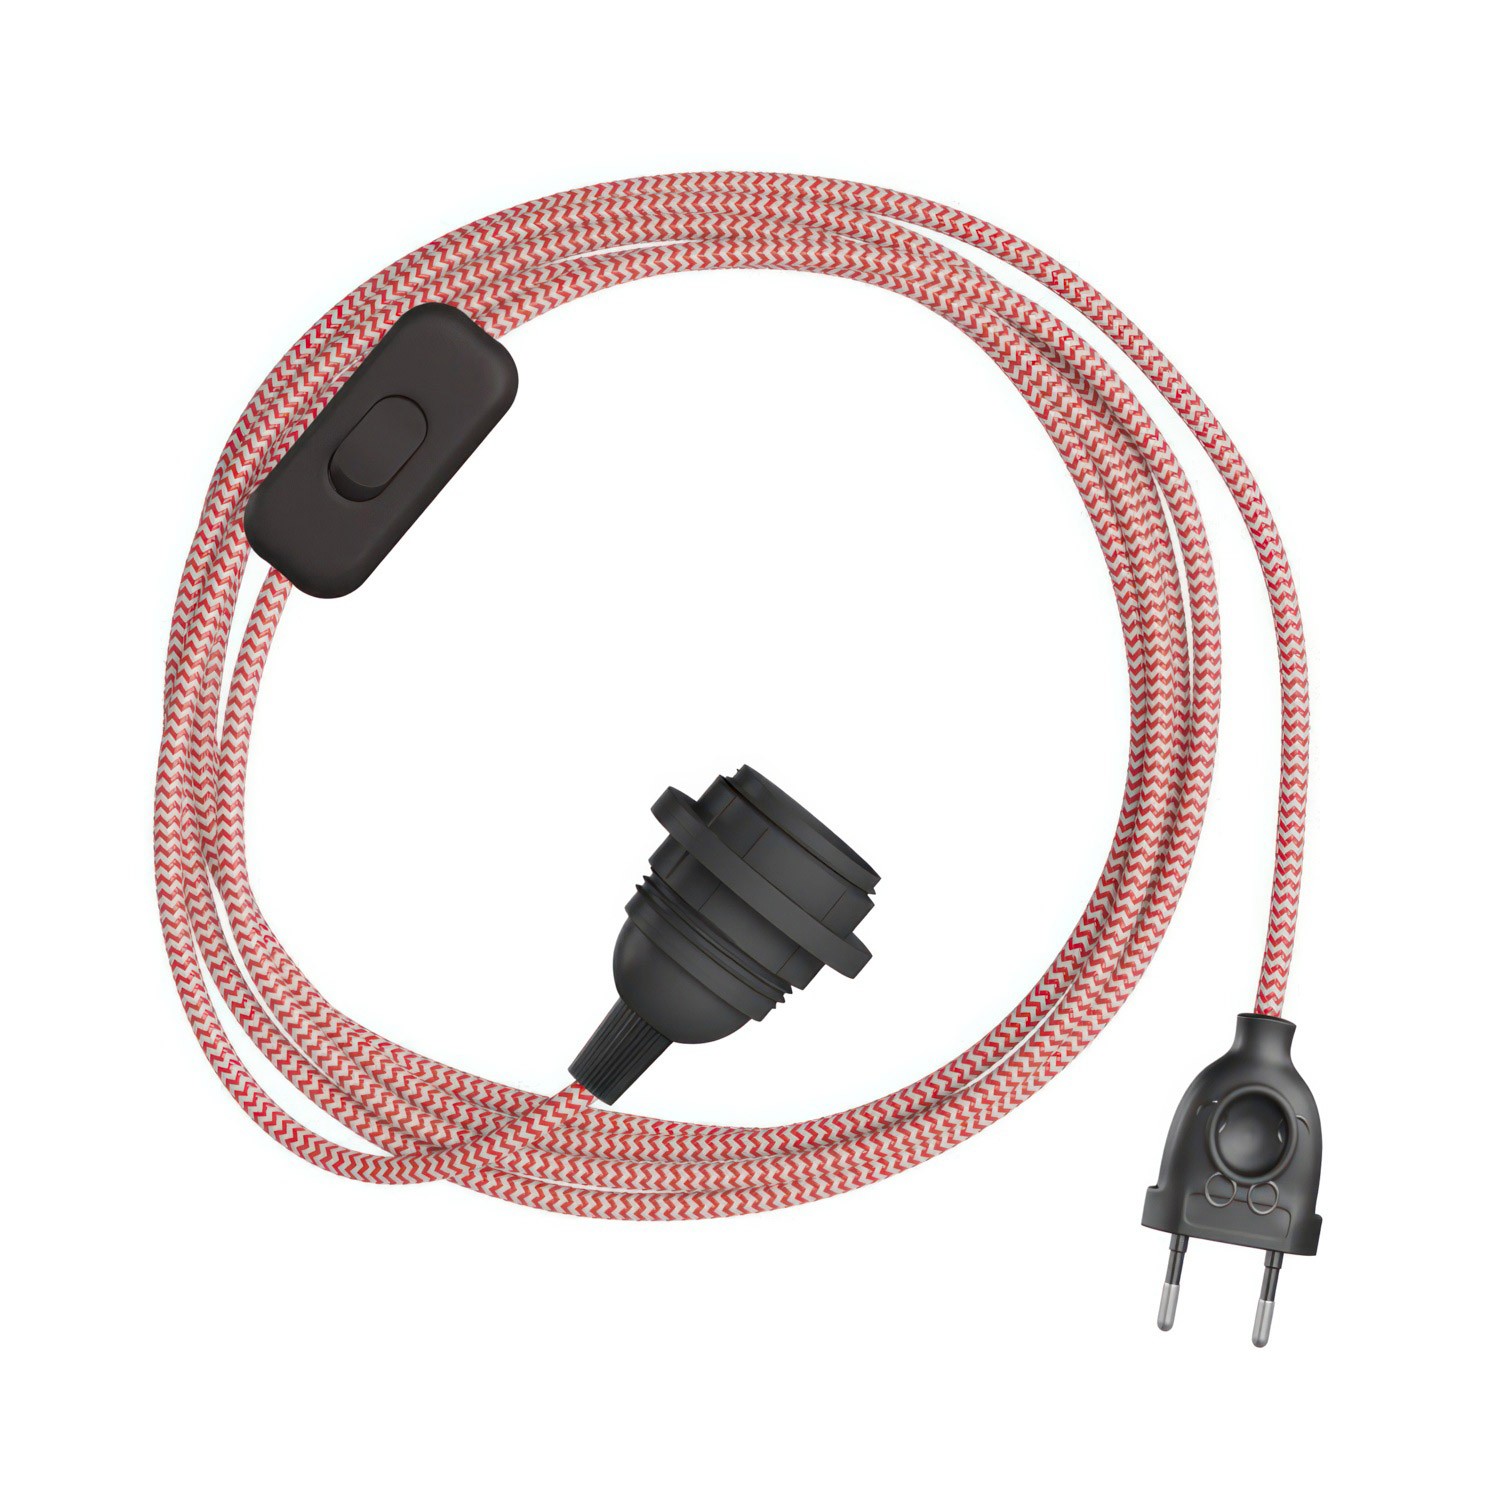 SnakeBis cikk-cakk kábel foglalattal és cikk-cakk hatású textilkábellel lámpabúrához